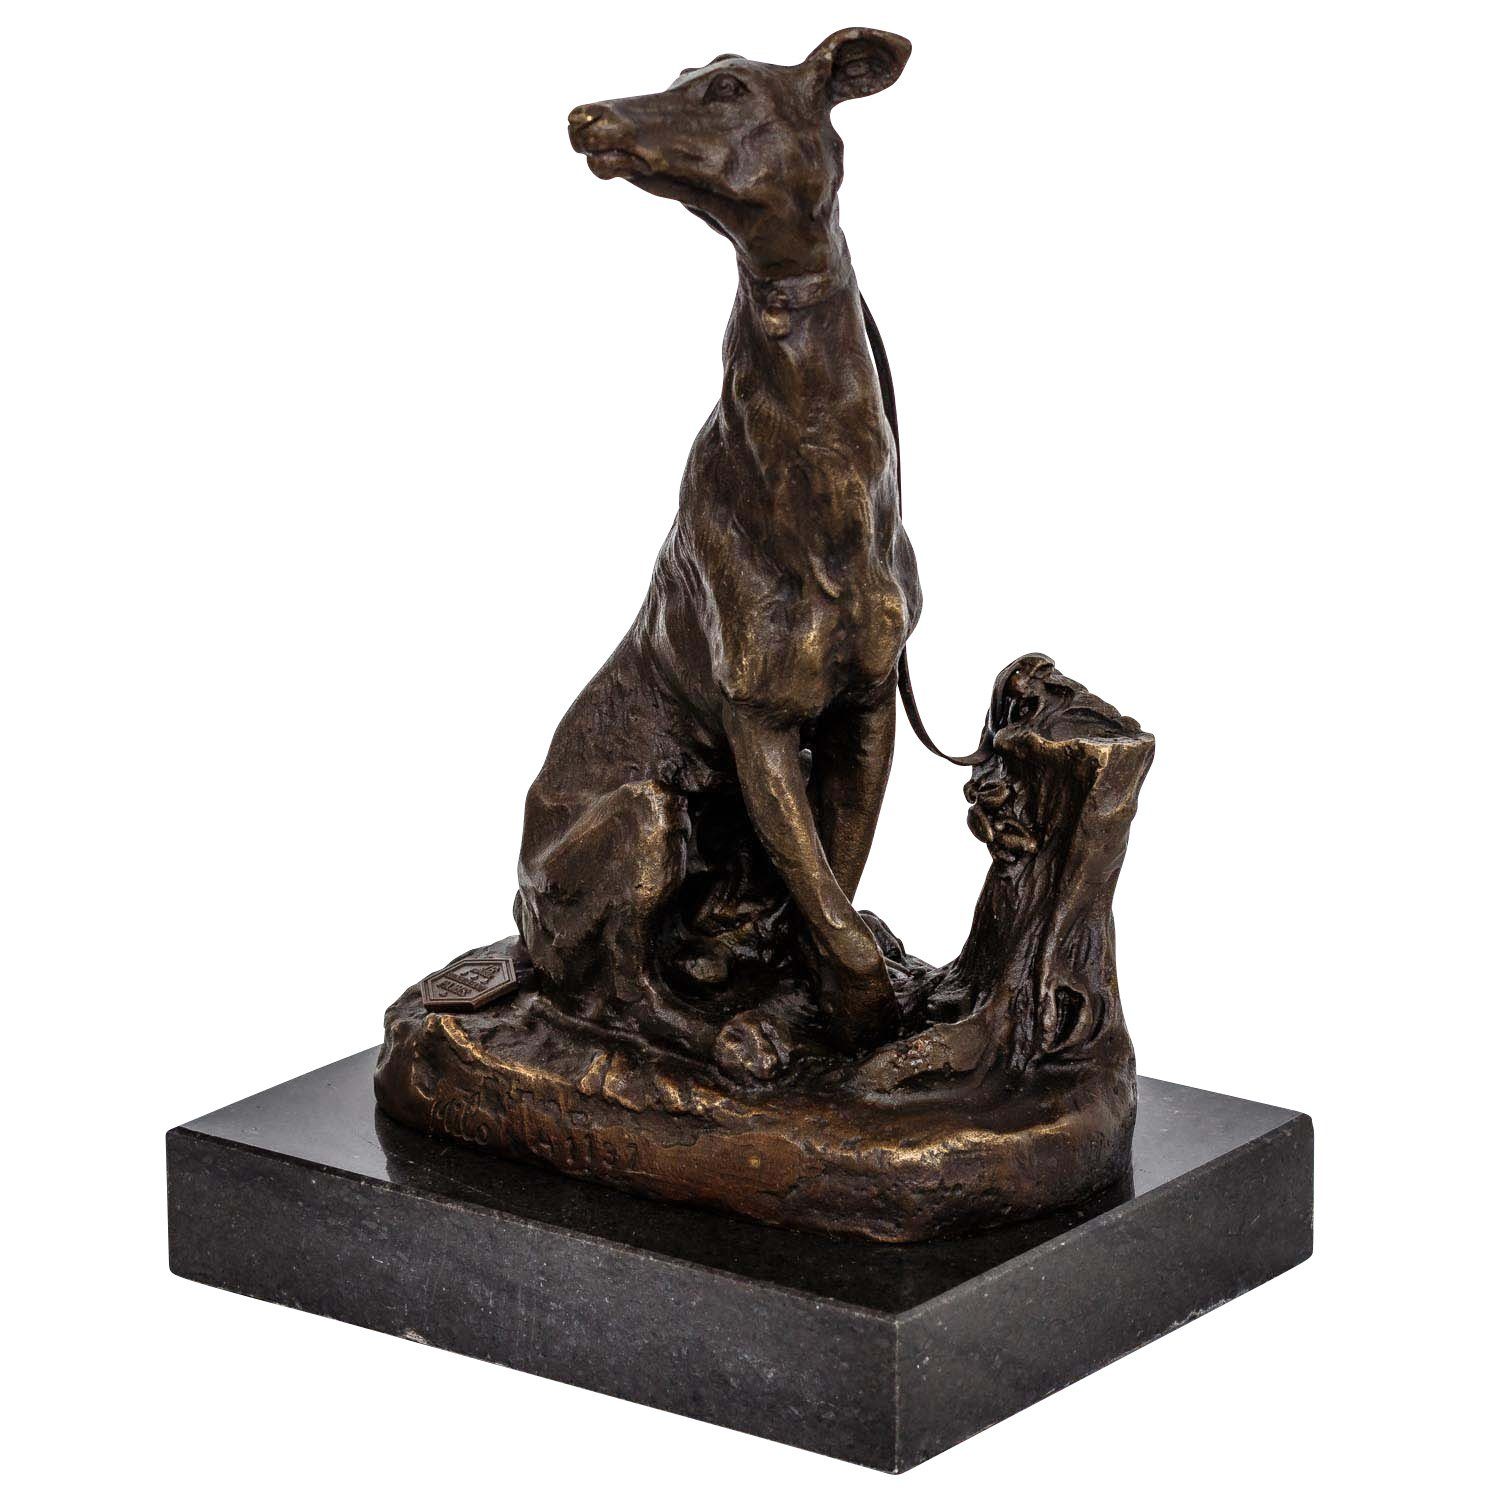 begrenzte Zeit verfügbar Aubaho Skulptur Bronzeskulptur Windhund Antik-Stil Figur Bronze 20cm im